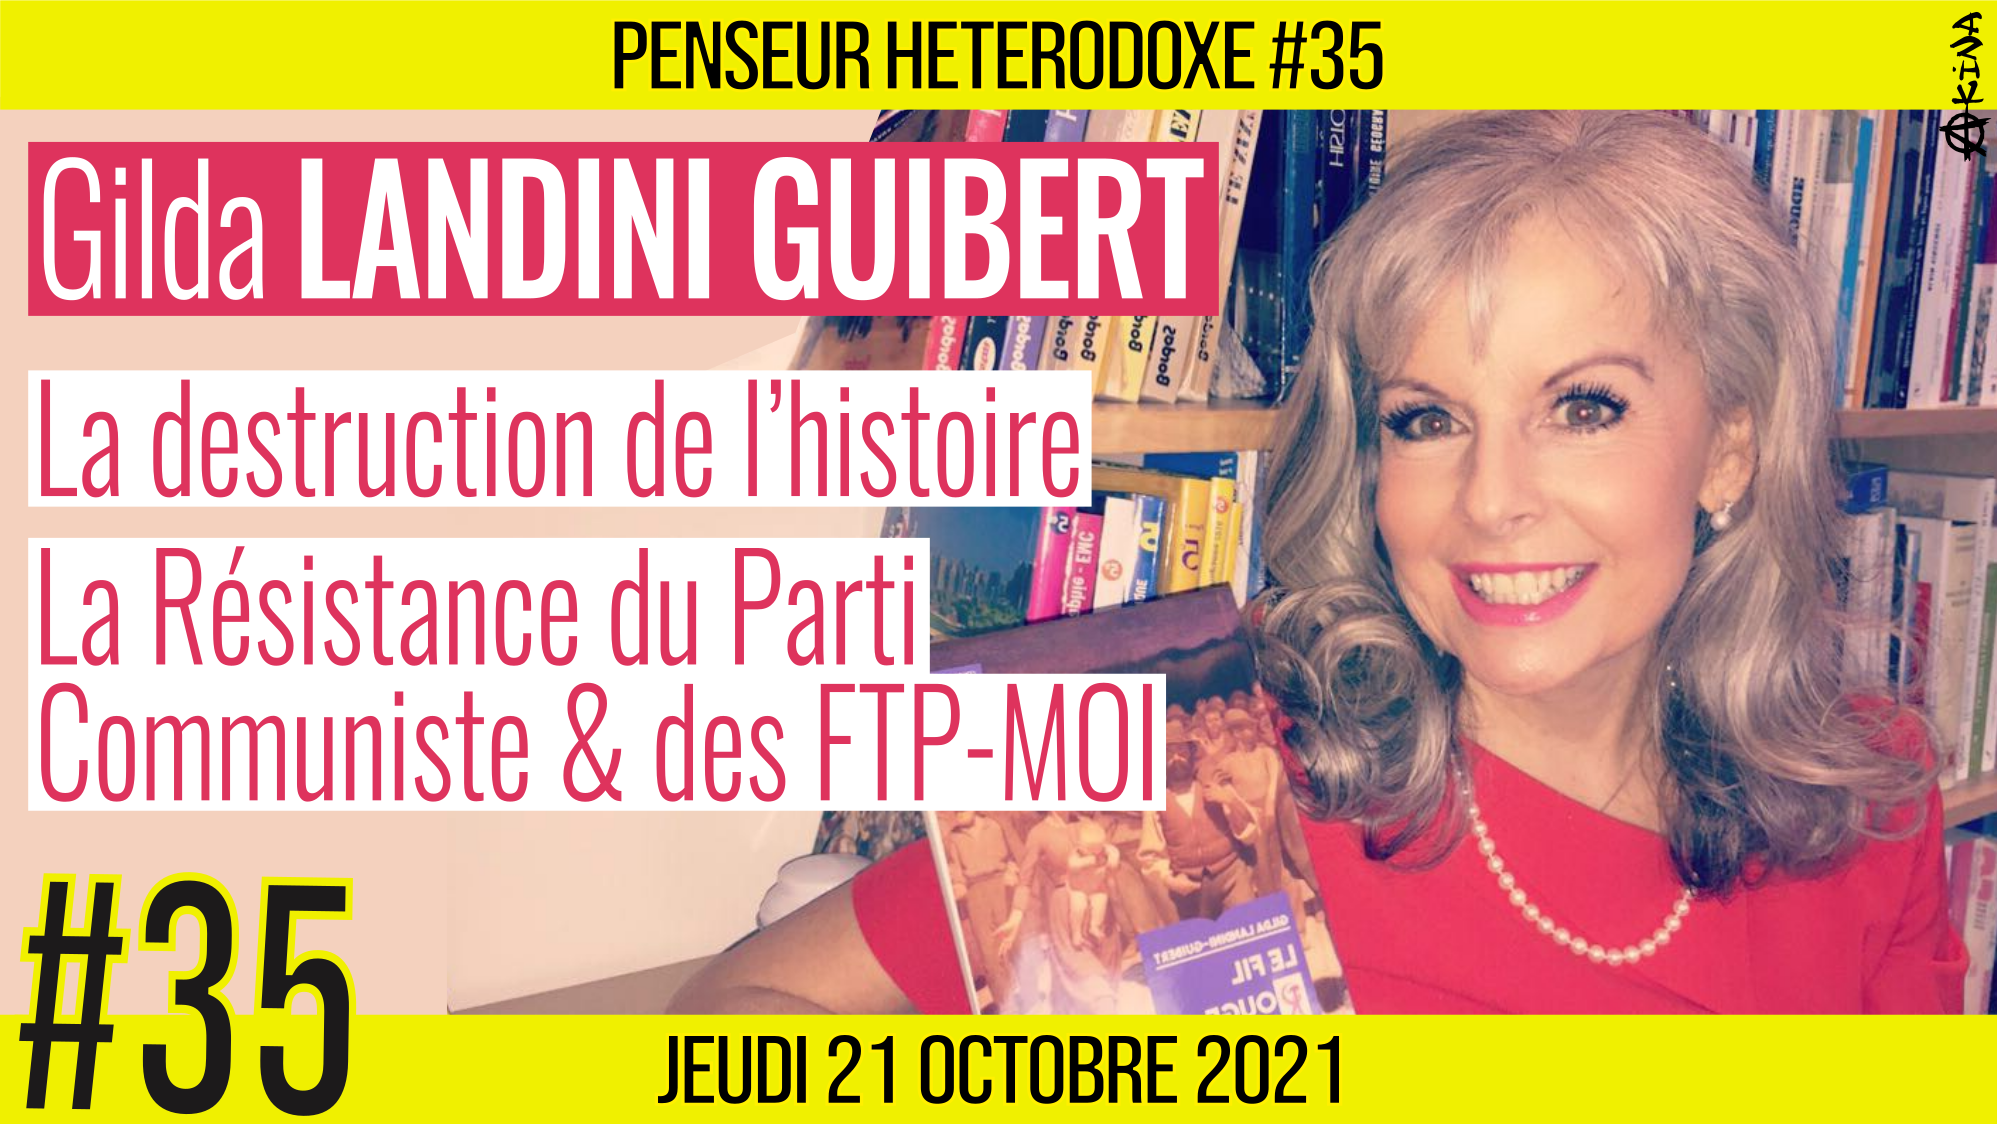 💡 PENSEUR HÉTÉRODOXE #35 🗣 Gilda LANDINI GUIBERT 🎯 La destruction de l’histoire & La Résistance du PC et des FTP-MOI 📆 21-10-2021